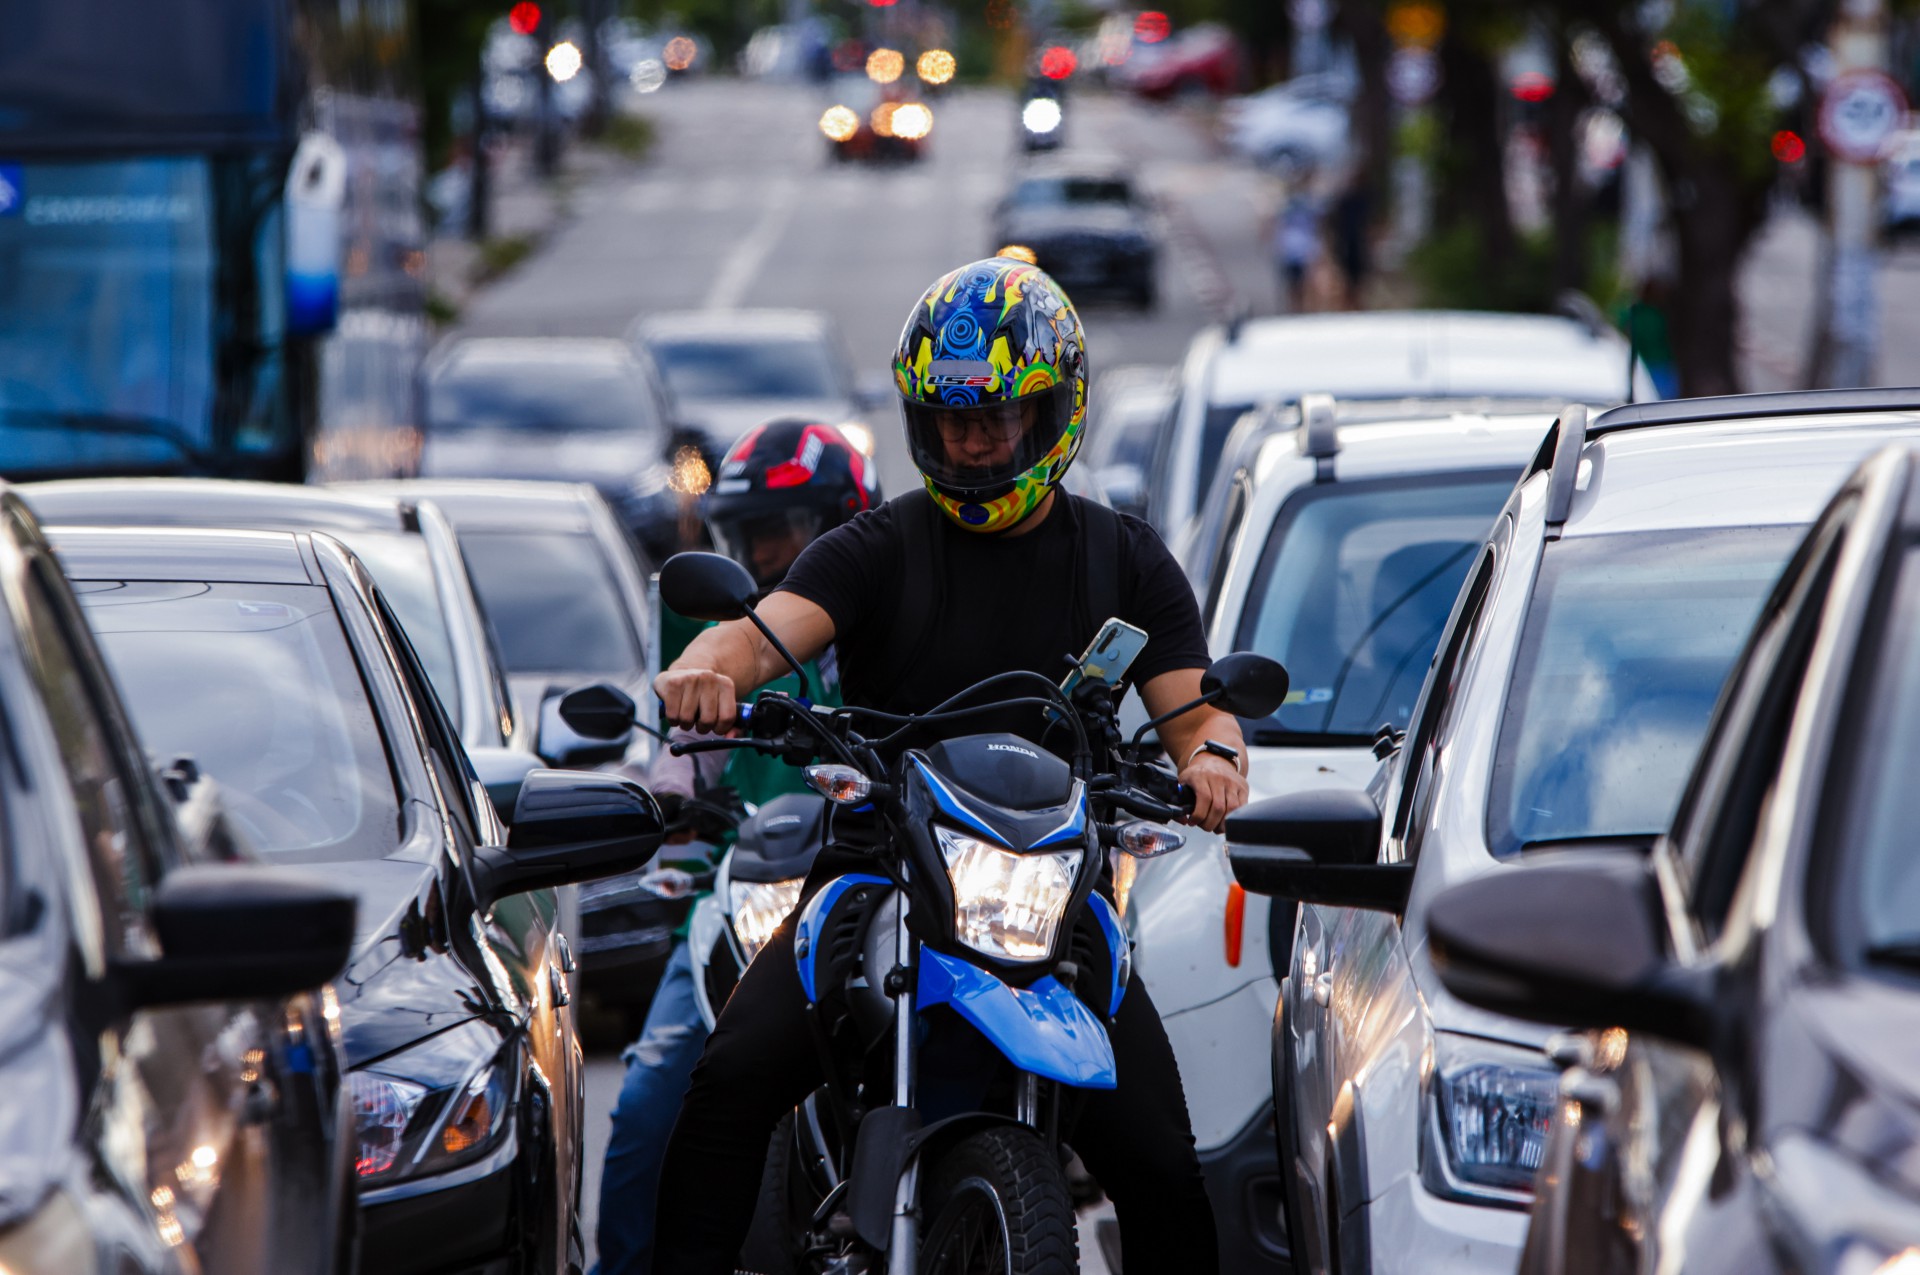 A quantidade de motocicletas nas vias brasileiras passou de 18 milhões, em 2013, para 32 milhões em 2023 - um salto de 78% em dez anos (Foto: AURÉLIO ALVES)